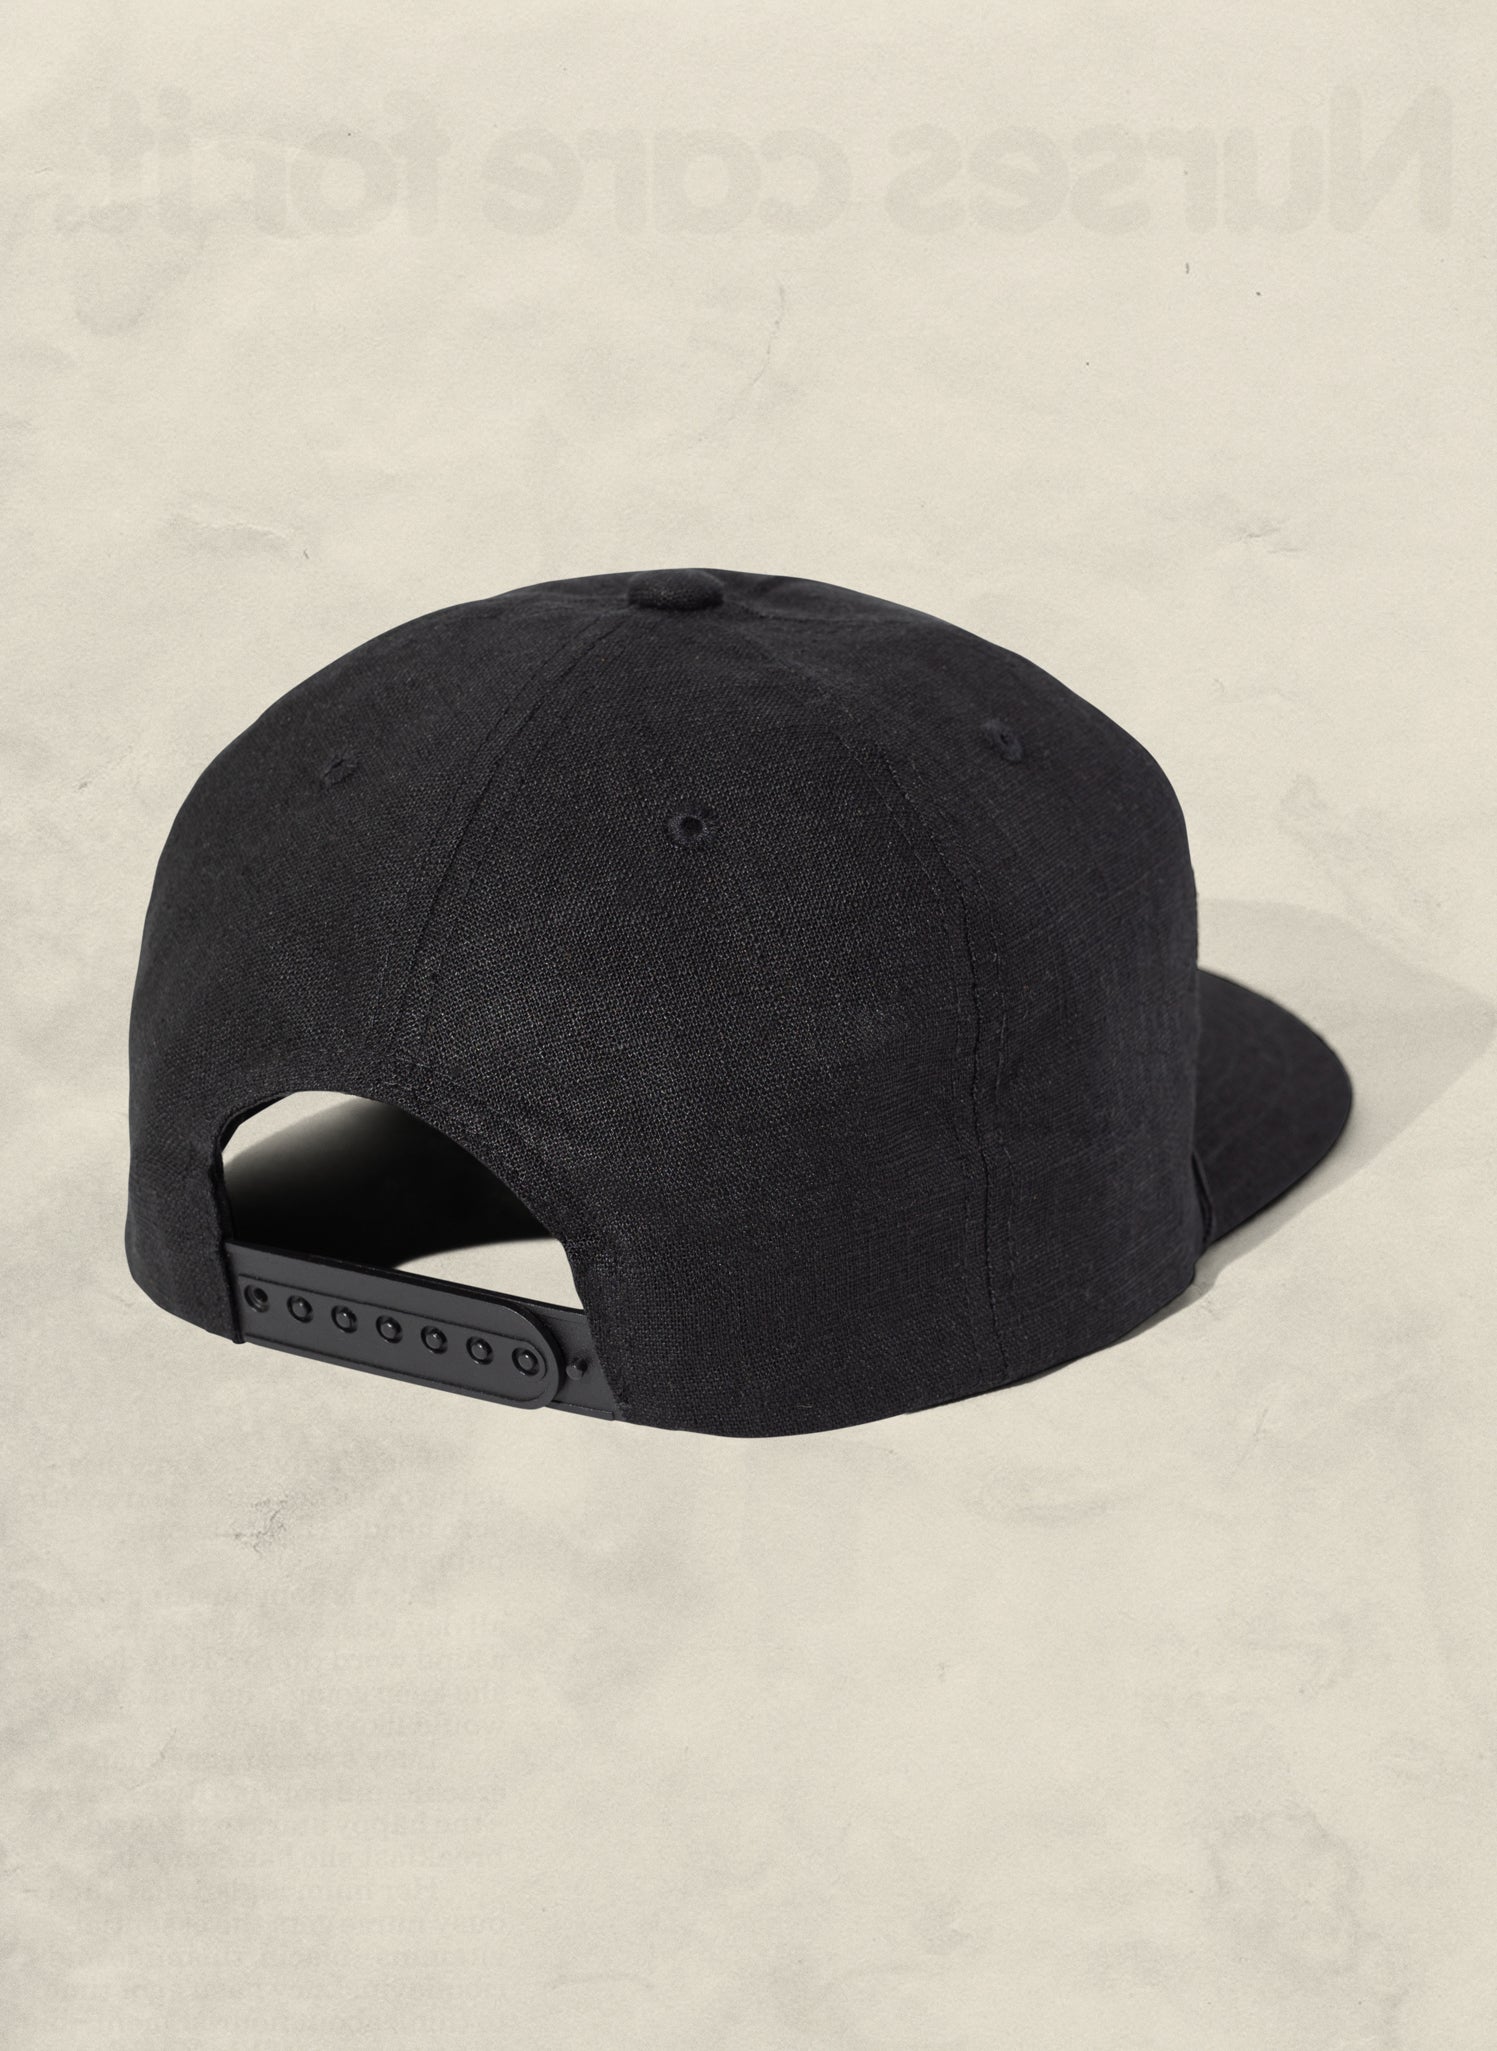 Blank Trucker Hats | Mesh Trucker Hats Black